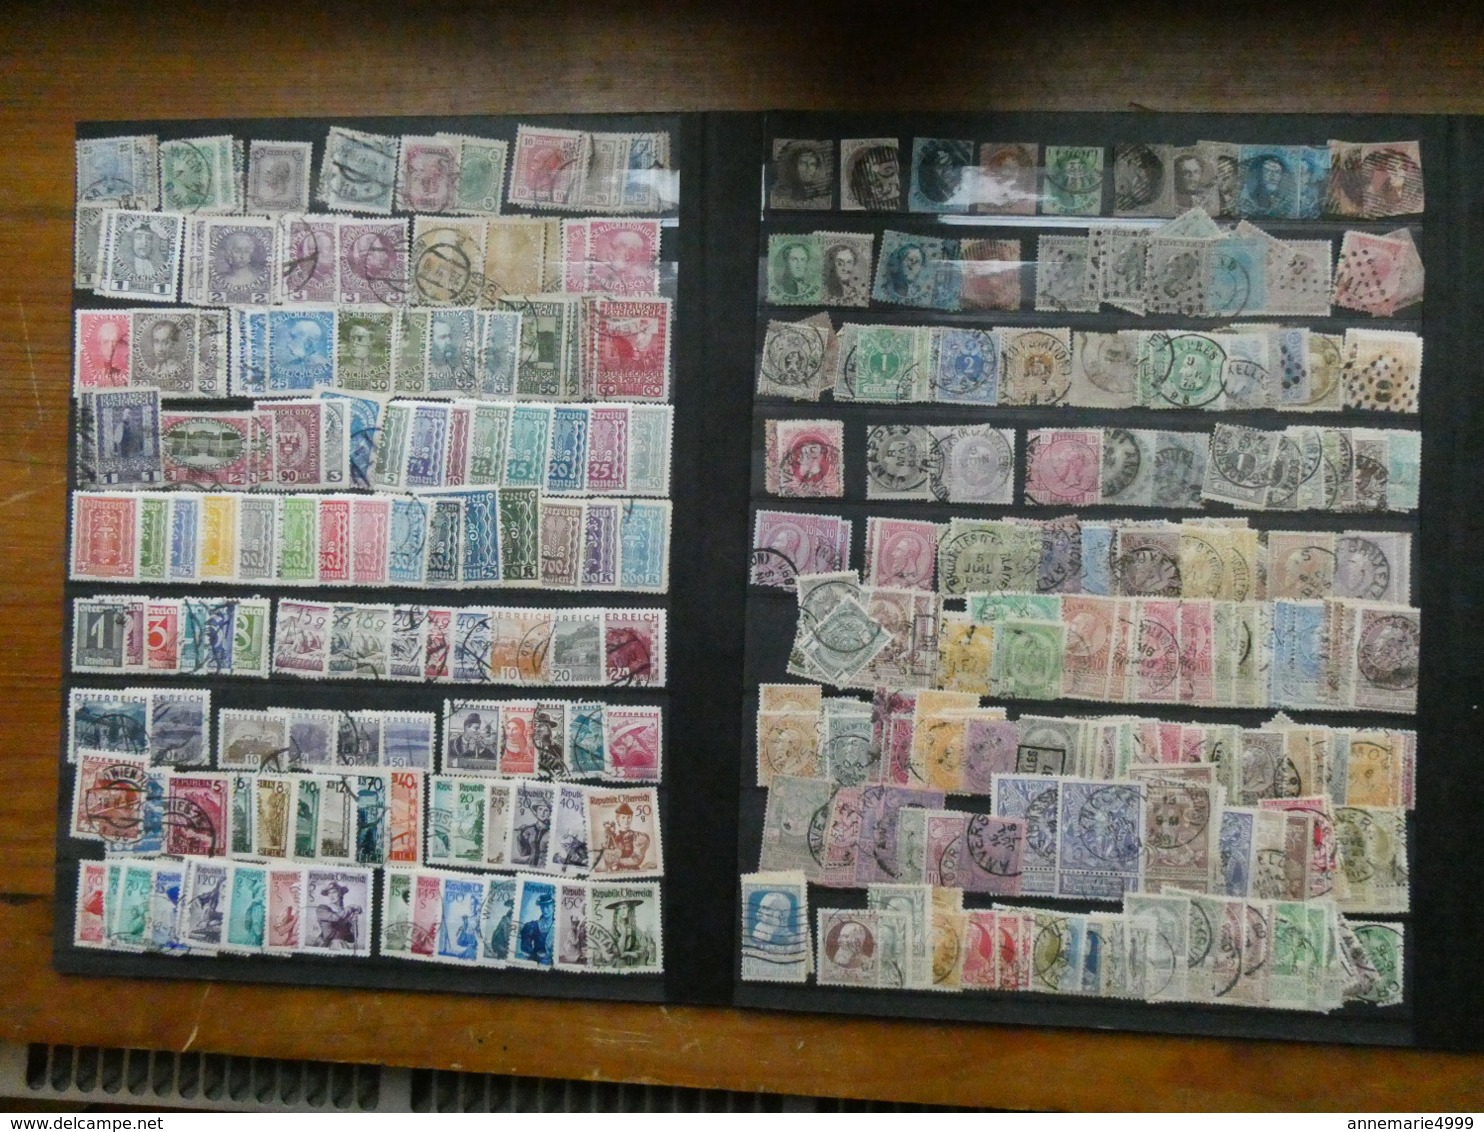 EUROPE  Collection-accumulation tous pays, tous états, toutes périodes dont anciens Environ 4000 timbres